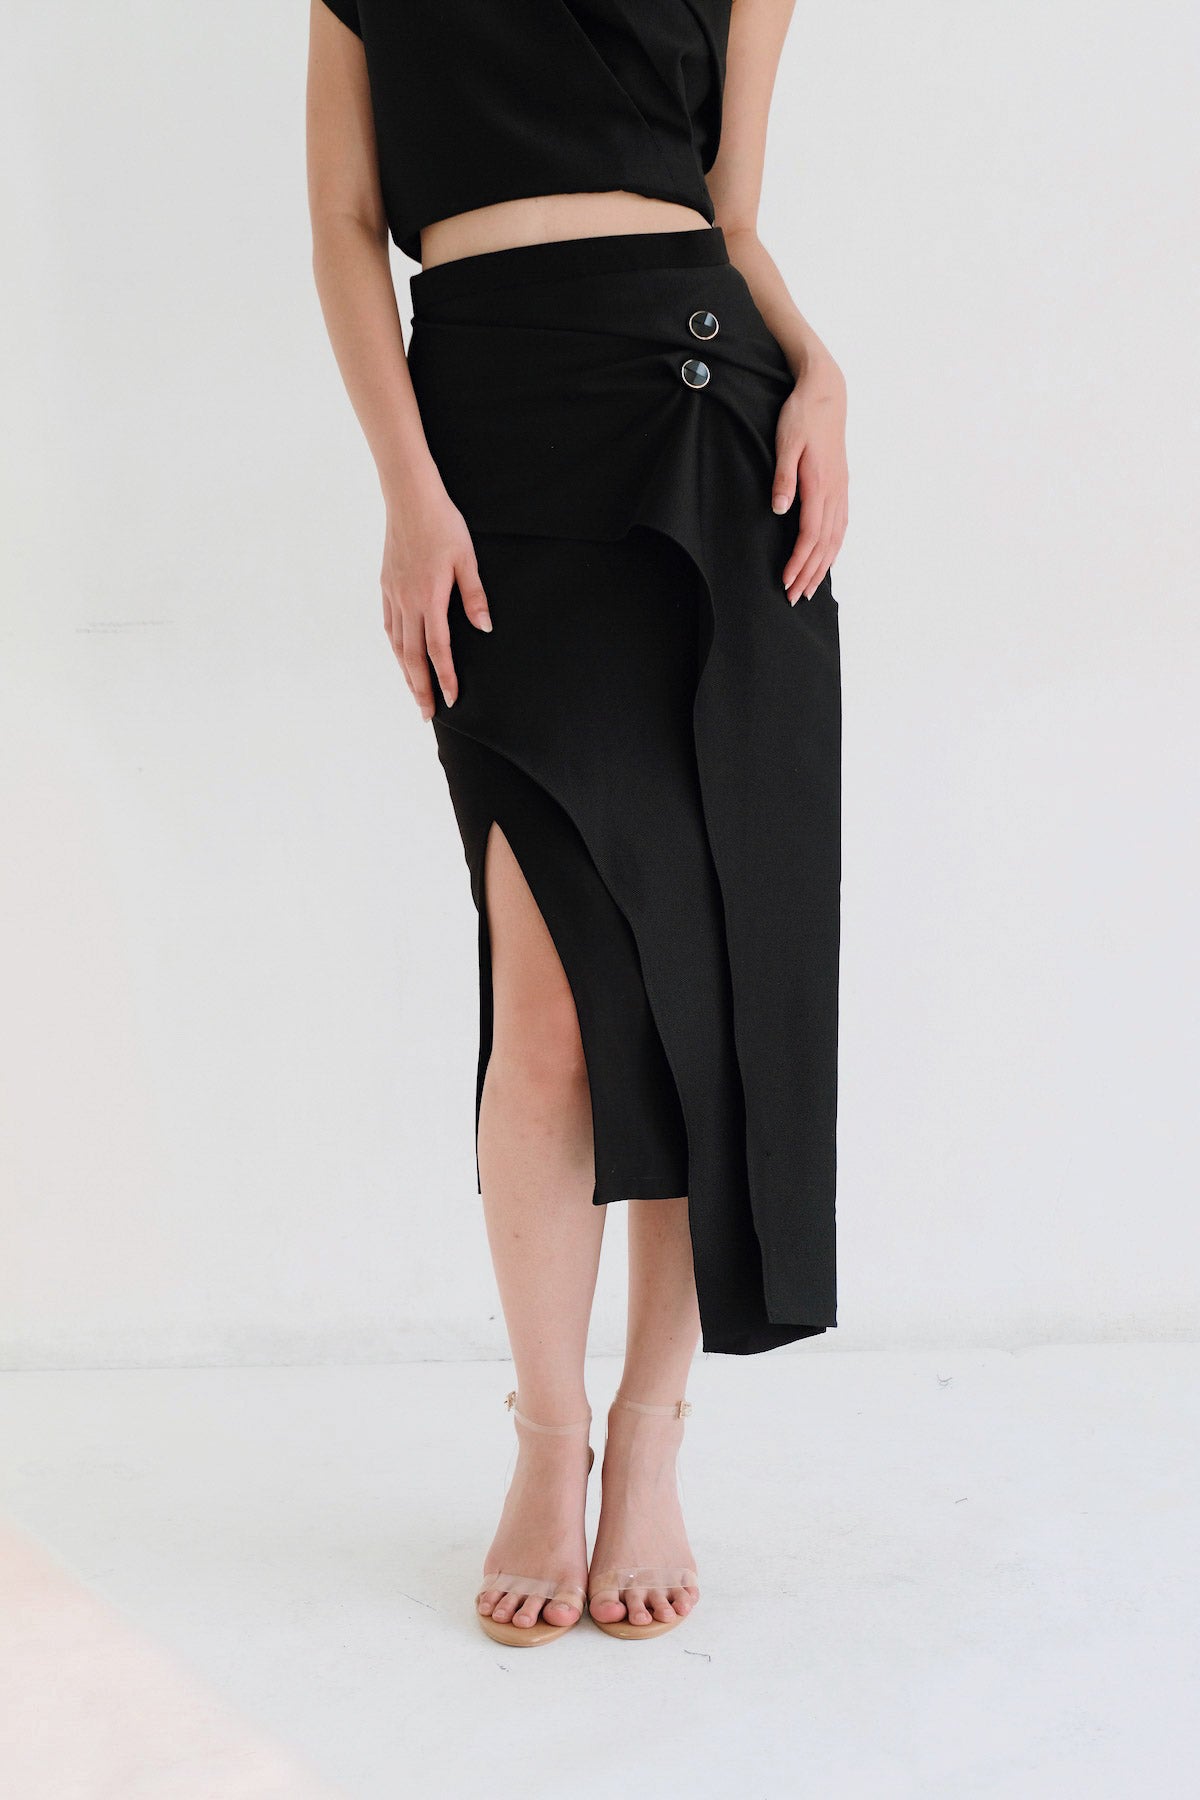 Mira Skirt In Black (1 Left)